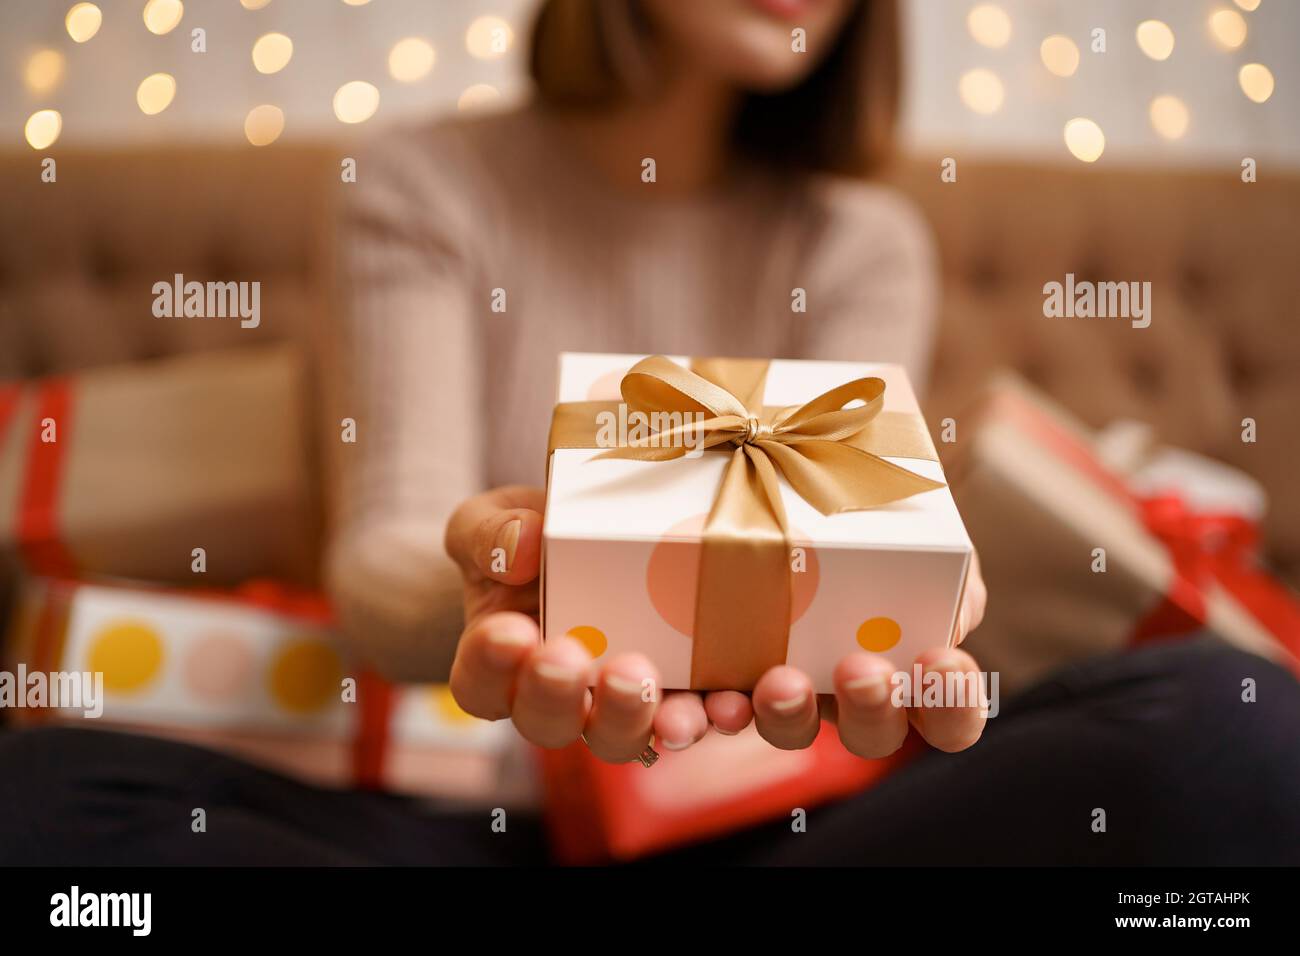 Une jeune femme heureuse tenant un cadeau de présentation entouré de cadeau des boîtes sont assises sur un canapé à dos de chameau avec des lumières en arrière-plan Banque D'Images